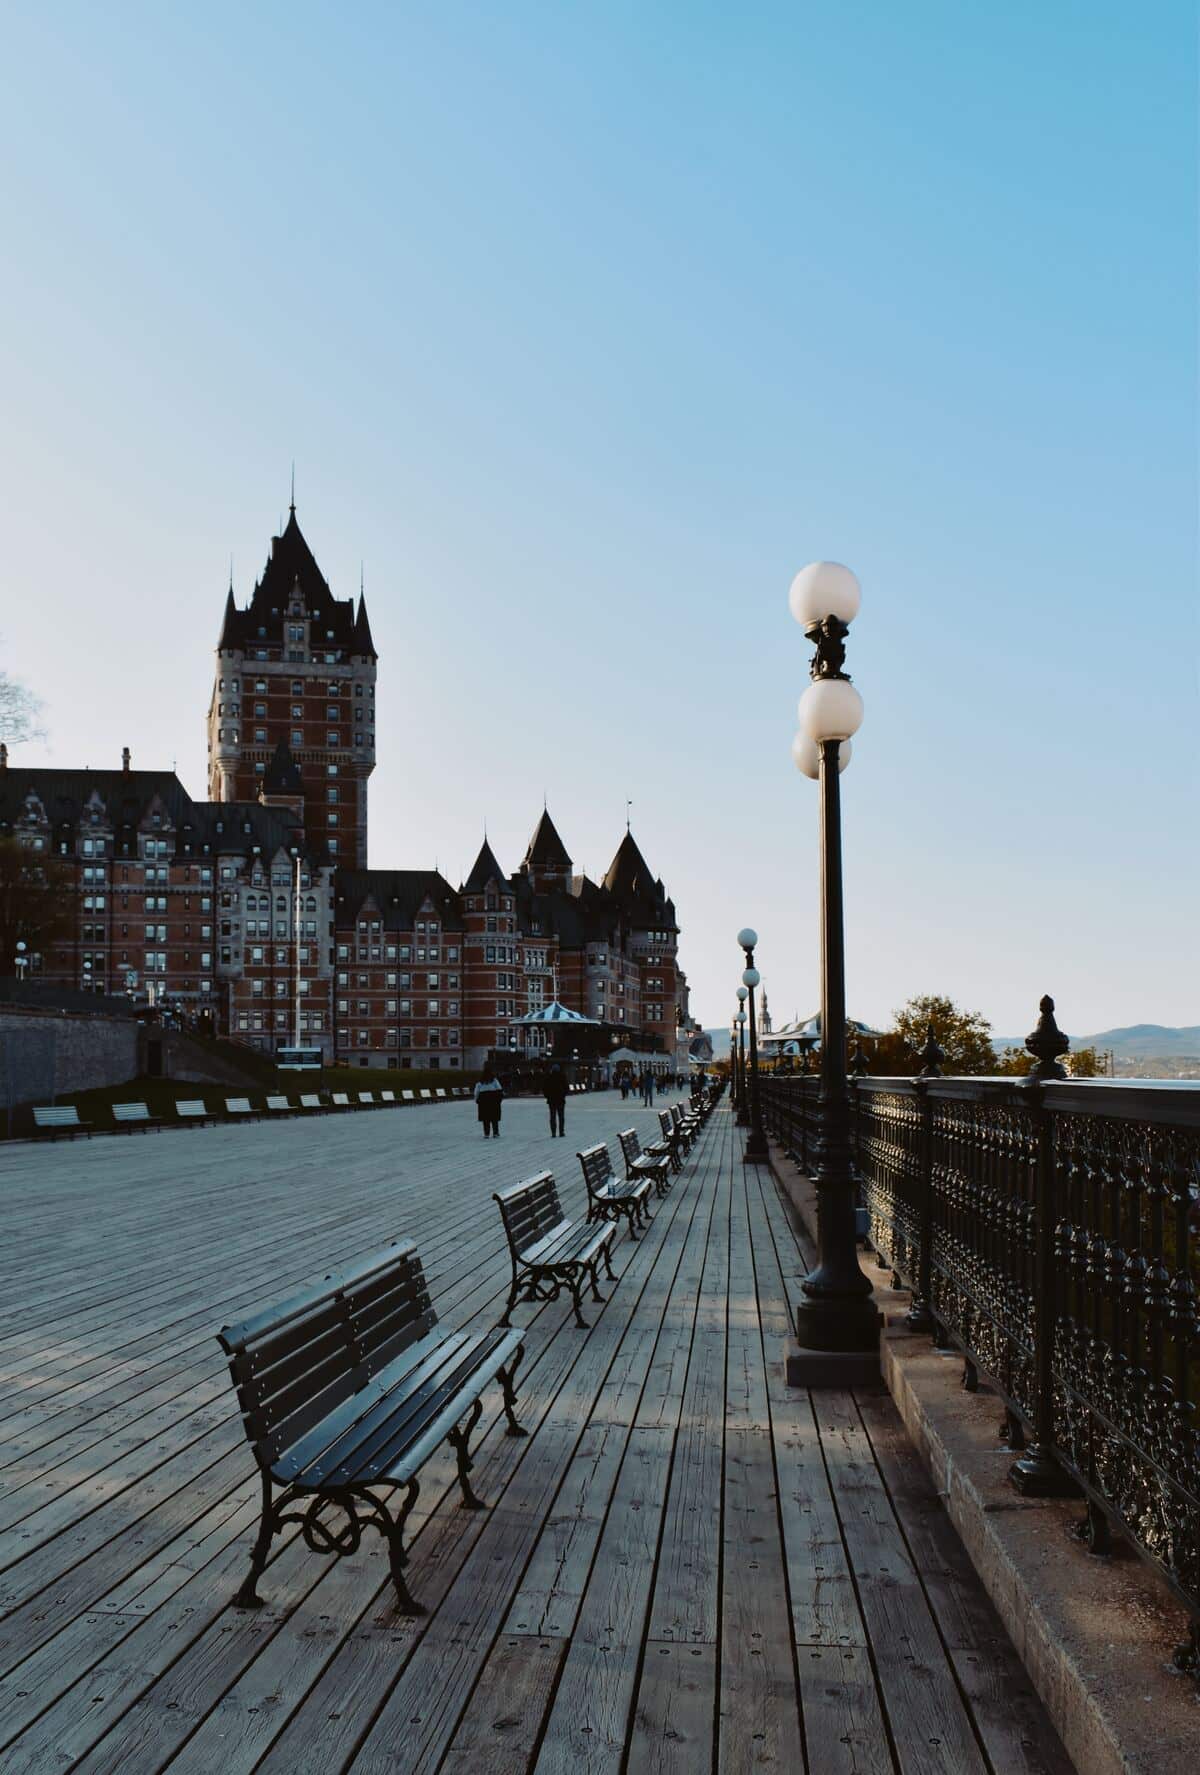 Terrasse Dufferin à Québec dans notre article Quoi faire à Québec : visiter Québec à pied en 10 lieux à voir. #Québec #VilleQuébec #VieuxQuébec #QuebecCity #QC